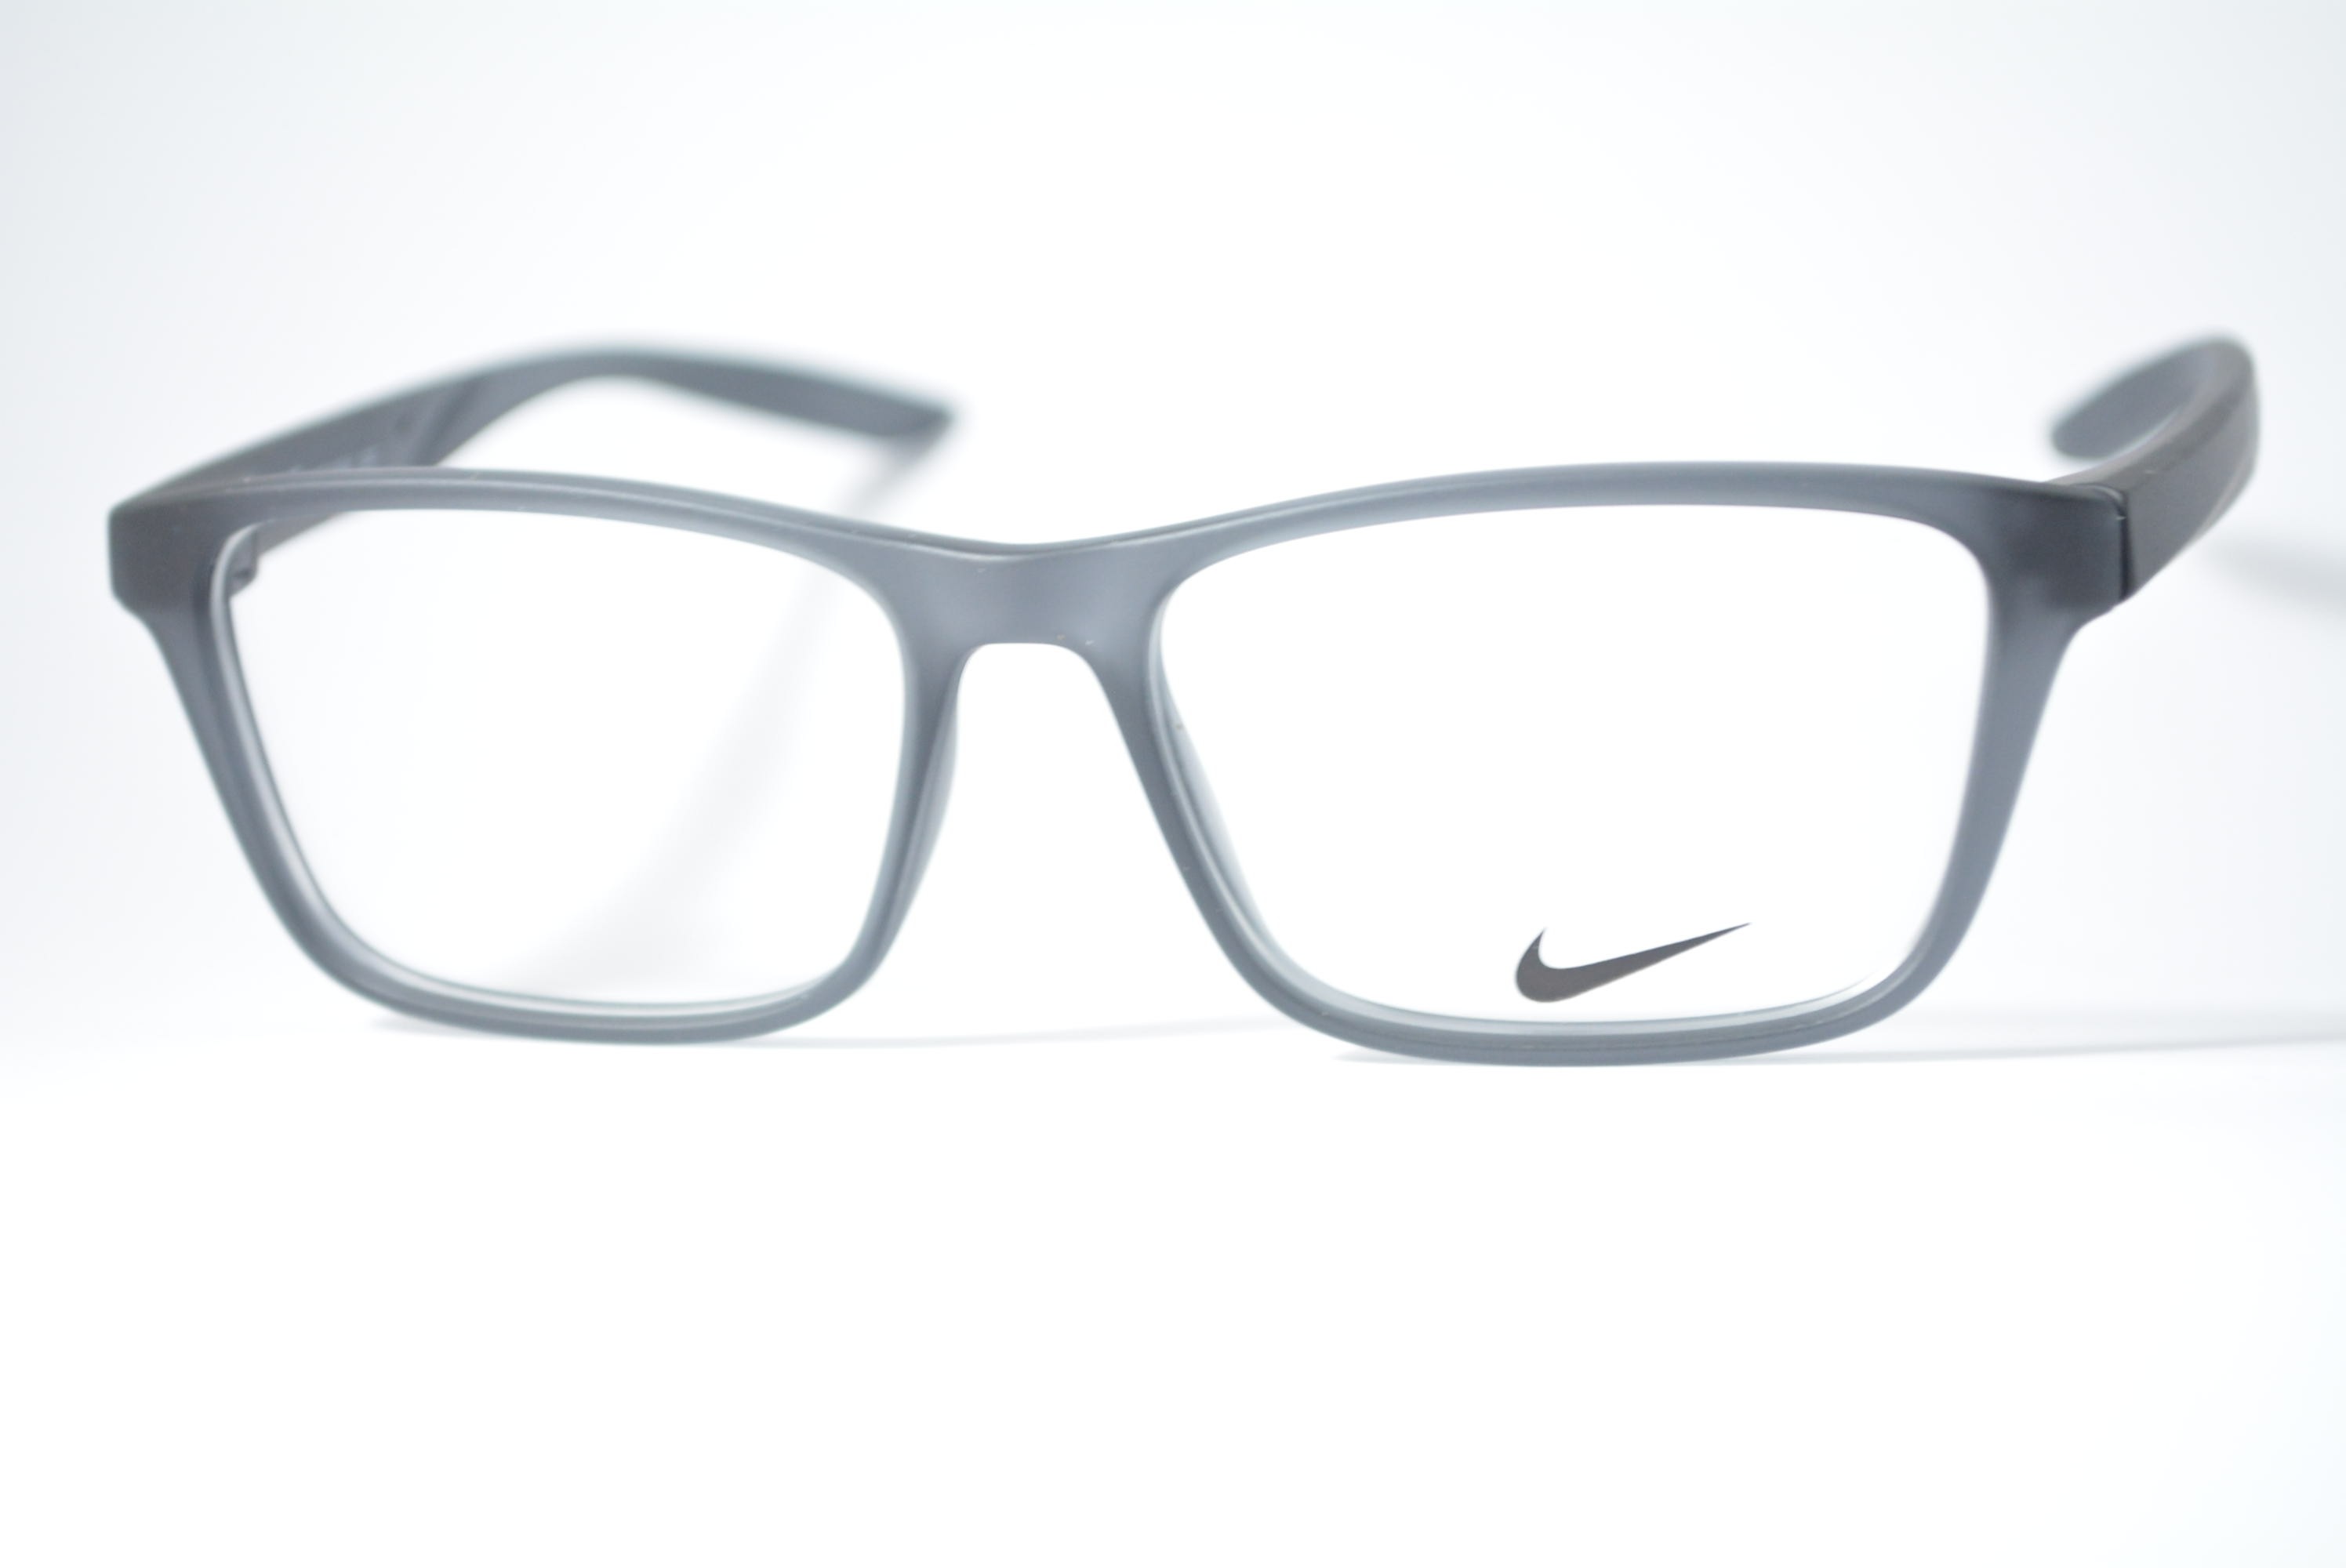 armação de óculos Nike mod 7304 034